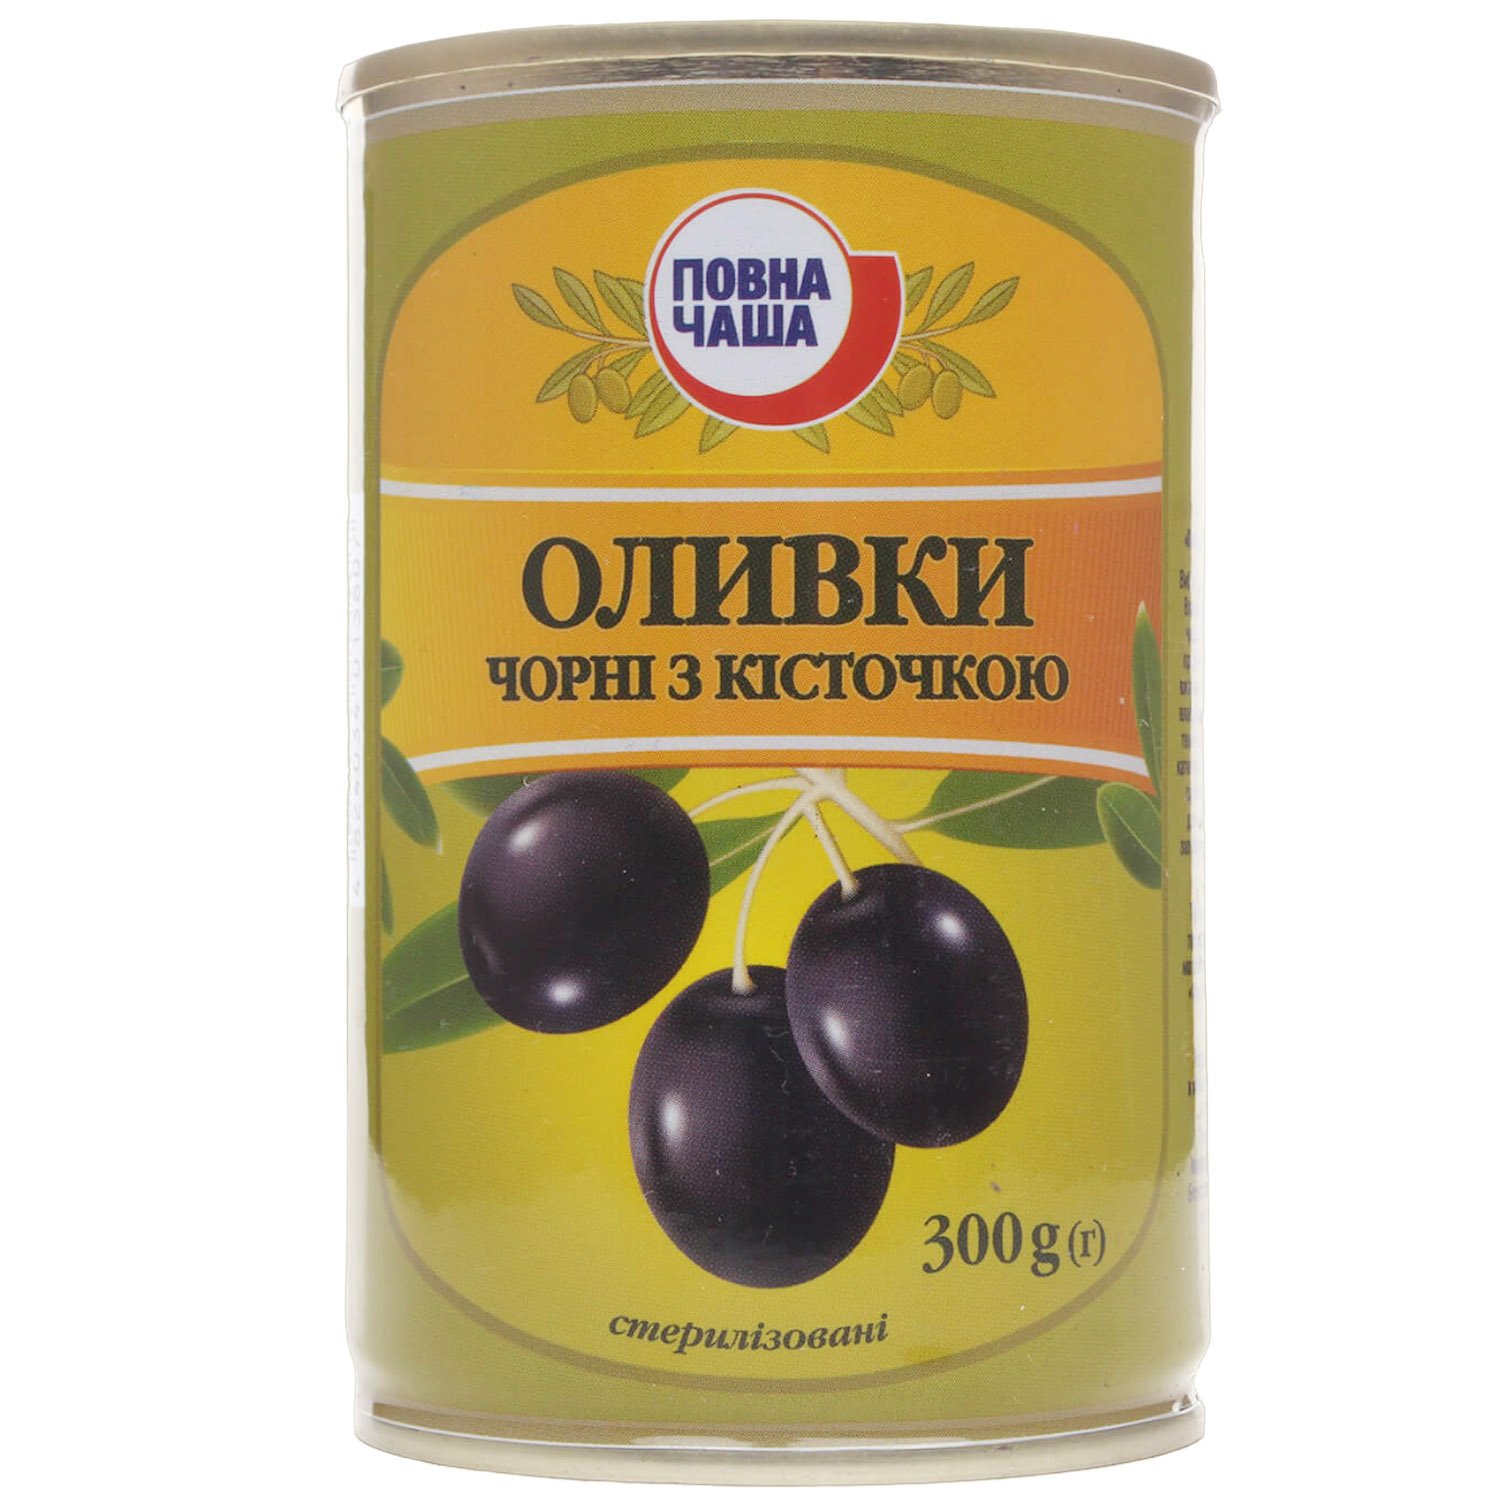 Оливки Повна Чаша чорні з кісточкою 300 г (490849) - фото 1